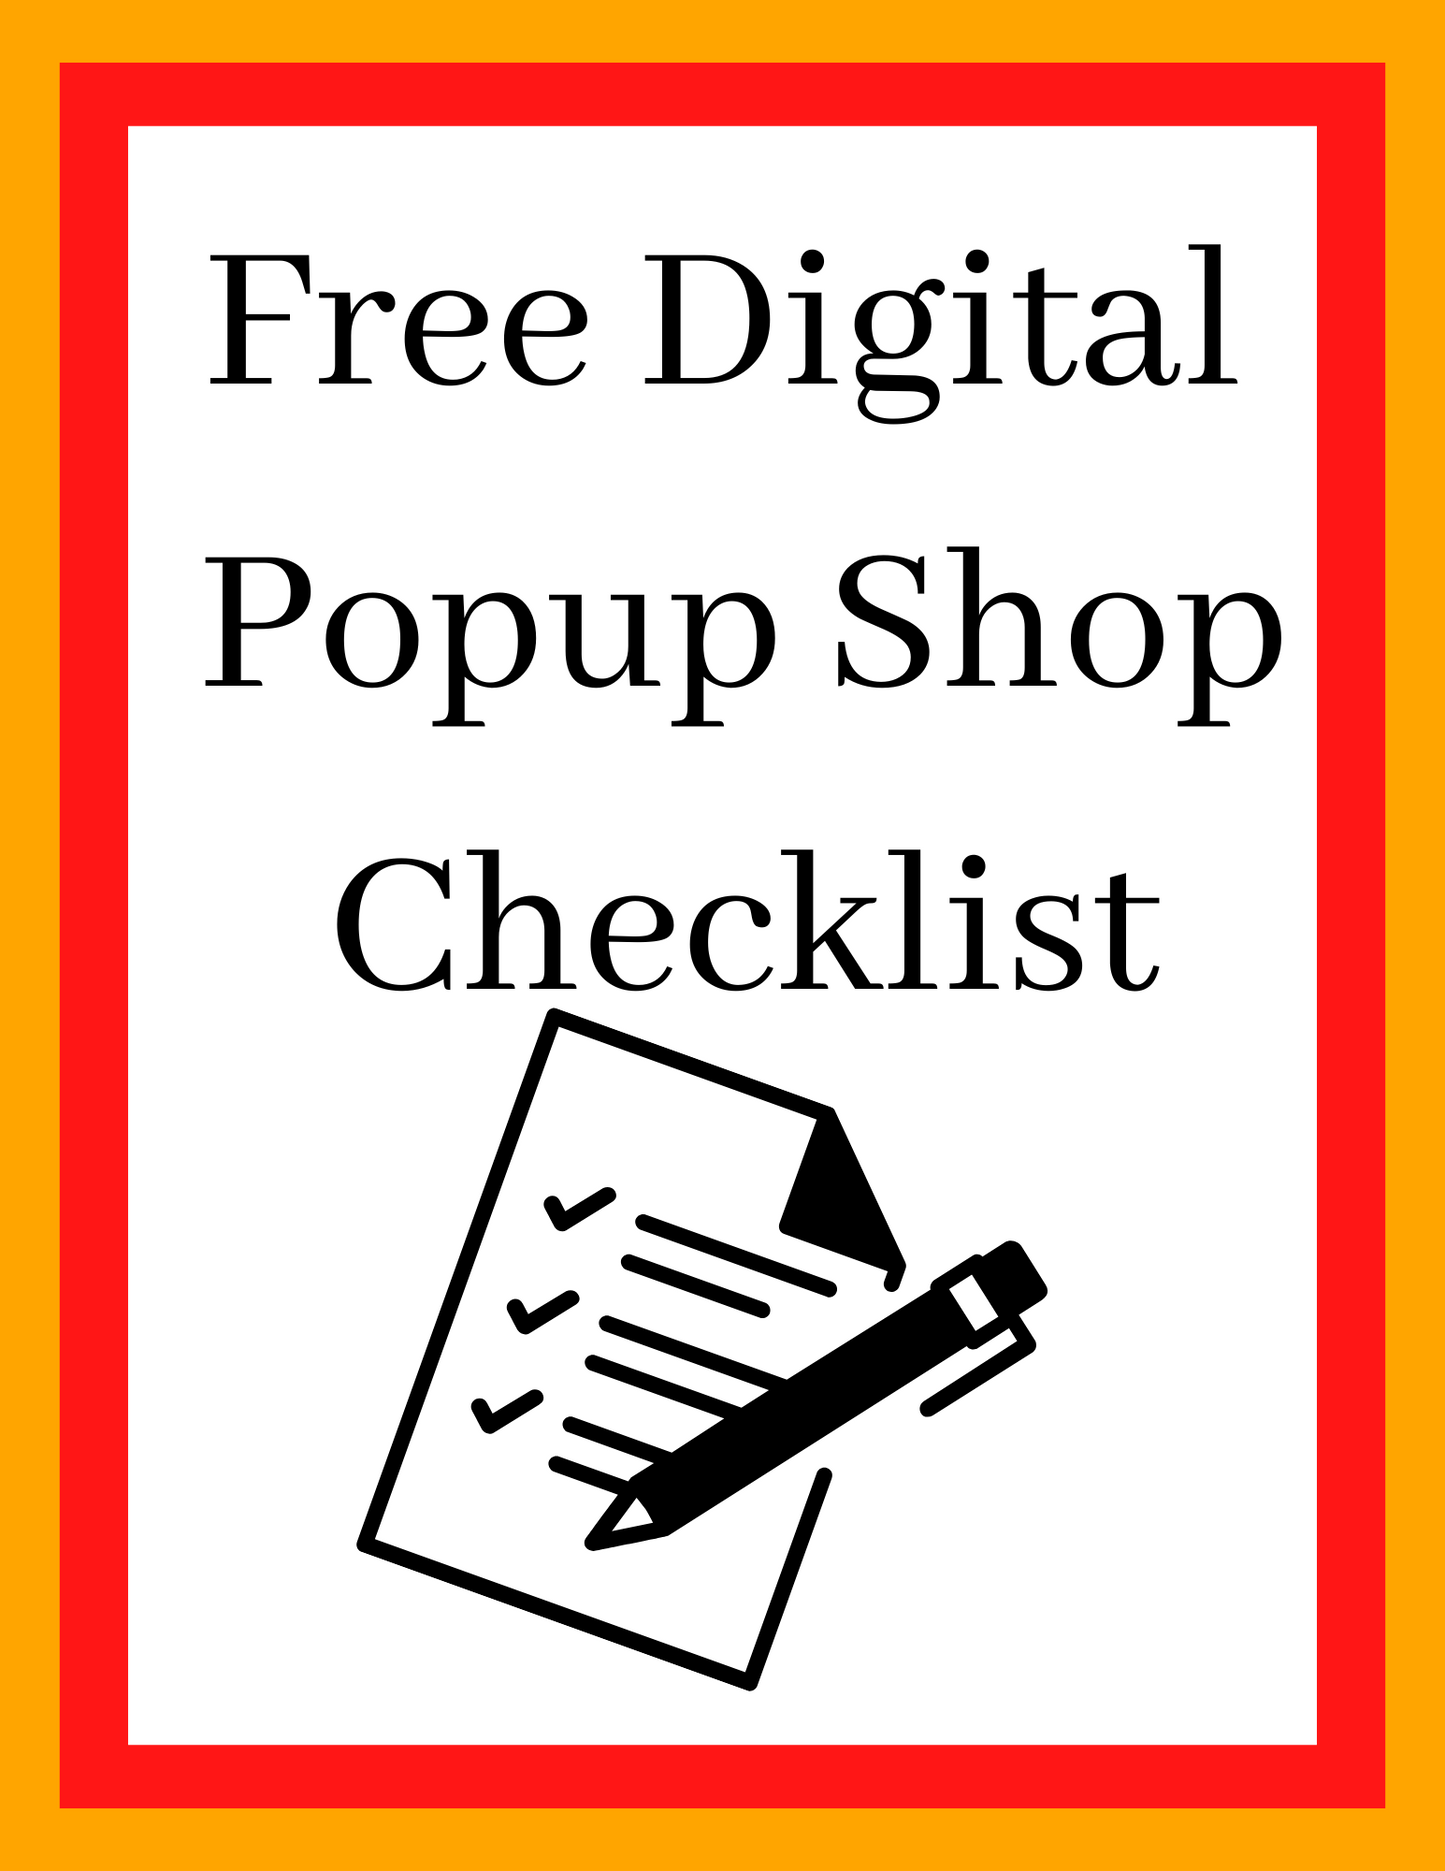 Free Digital Popup Shop Checklist!